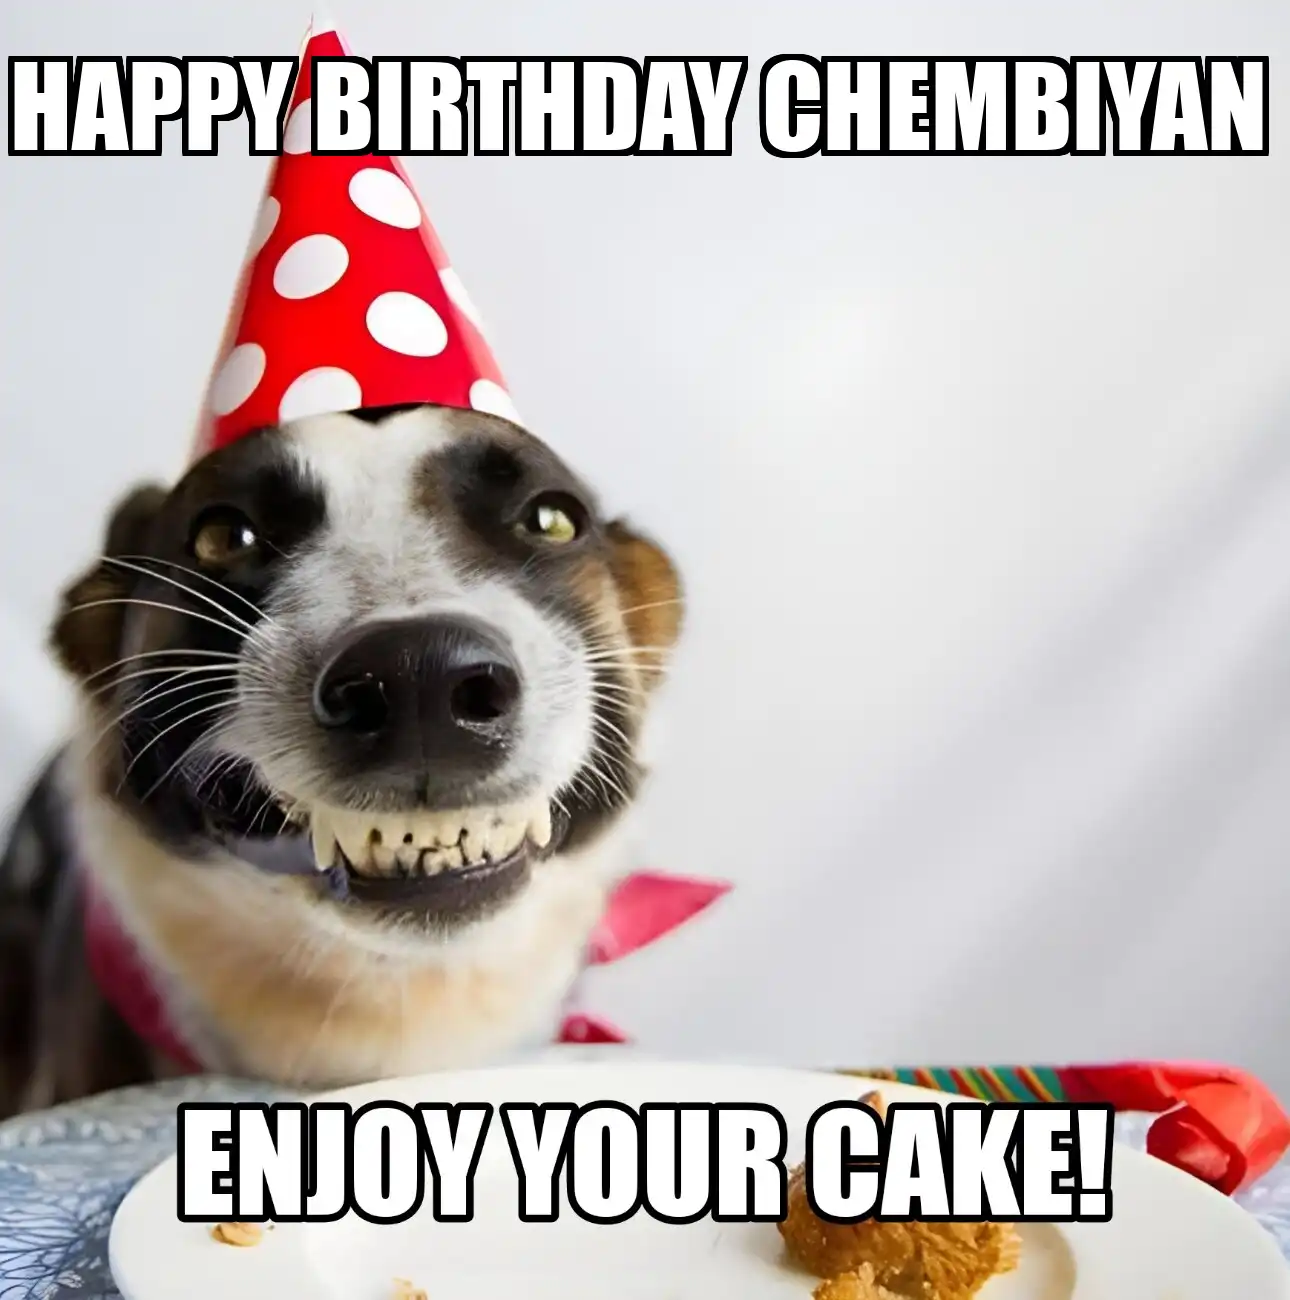 Happy Birthday Chembiyan Enjoy Your Cake Dog Meme